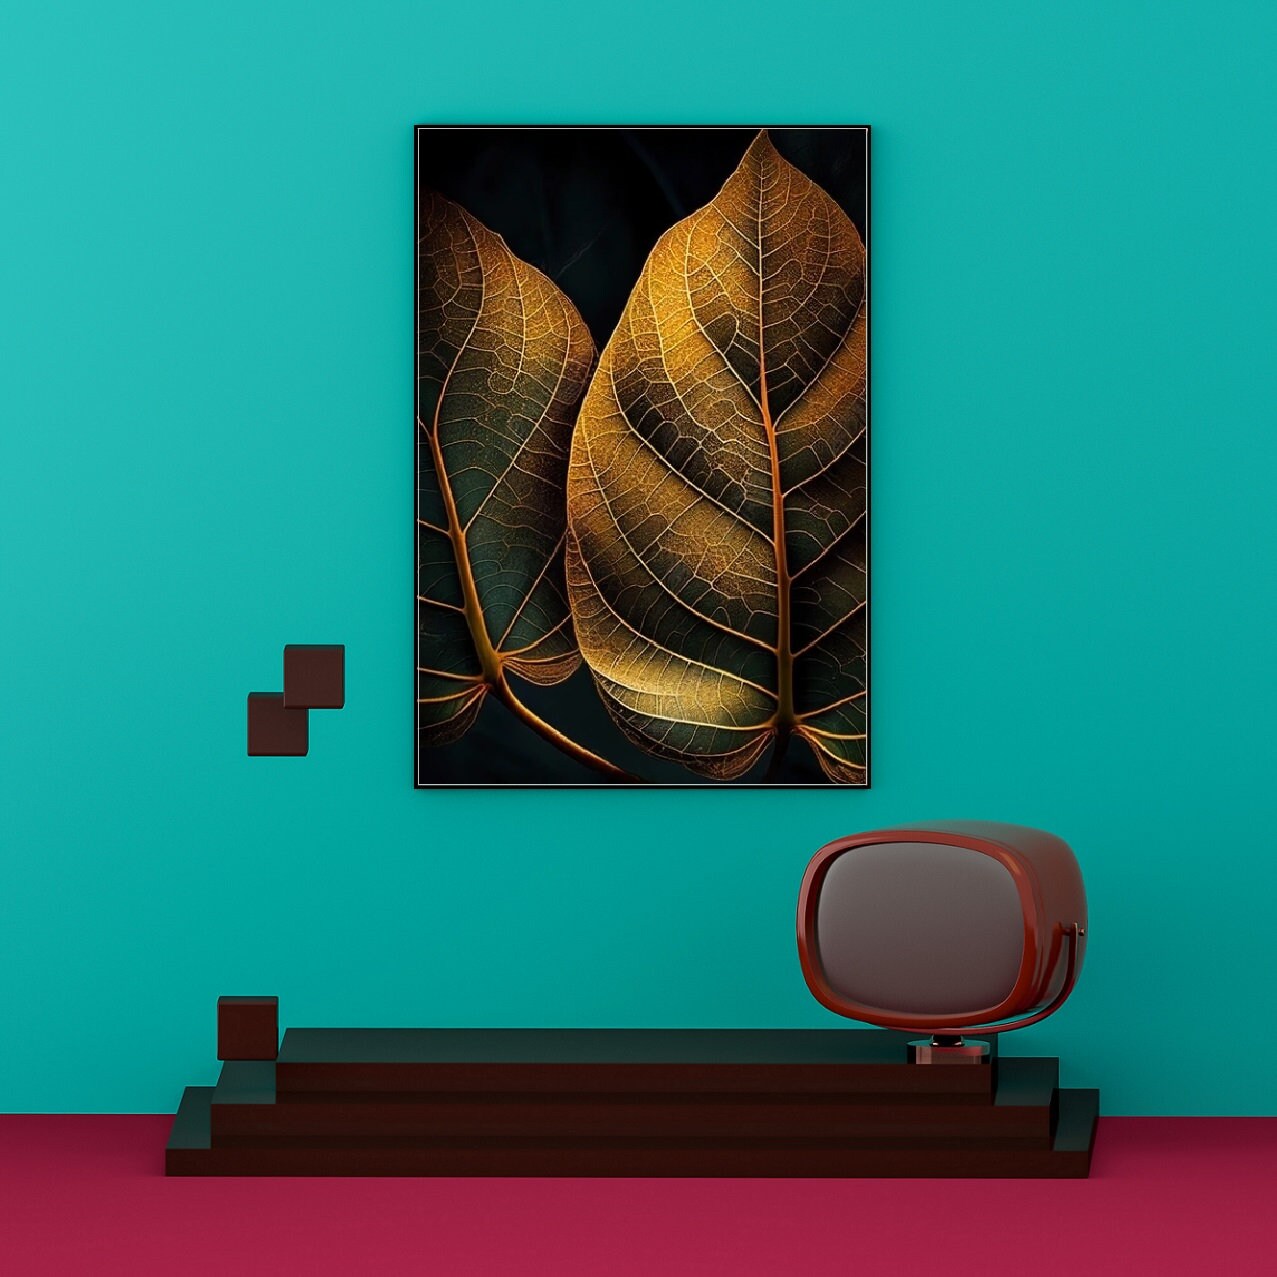 Extra large botanical wall art, printable leaves artwork in floating frame, golden leaf canvas print, dark framed wall art for living room